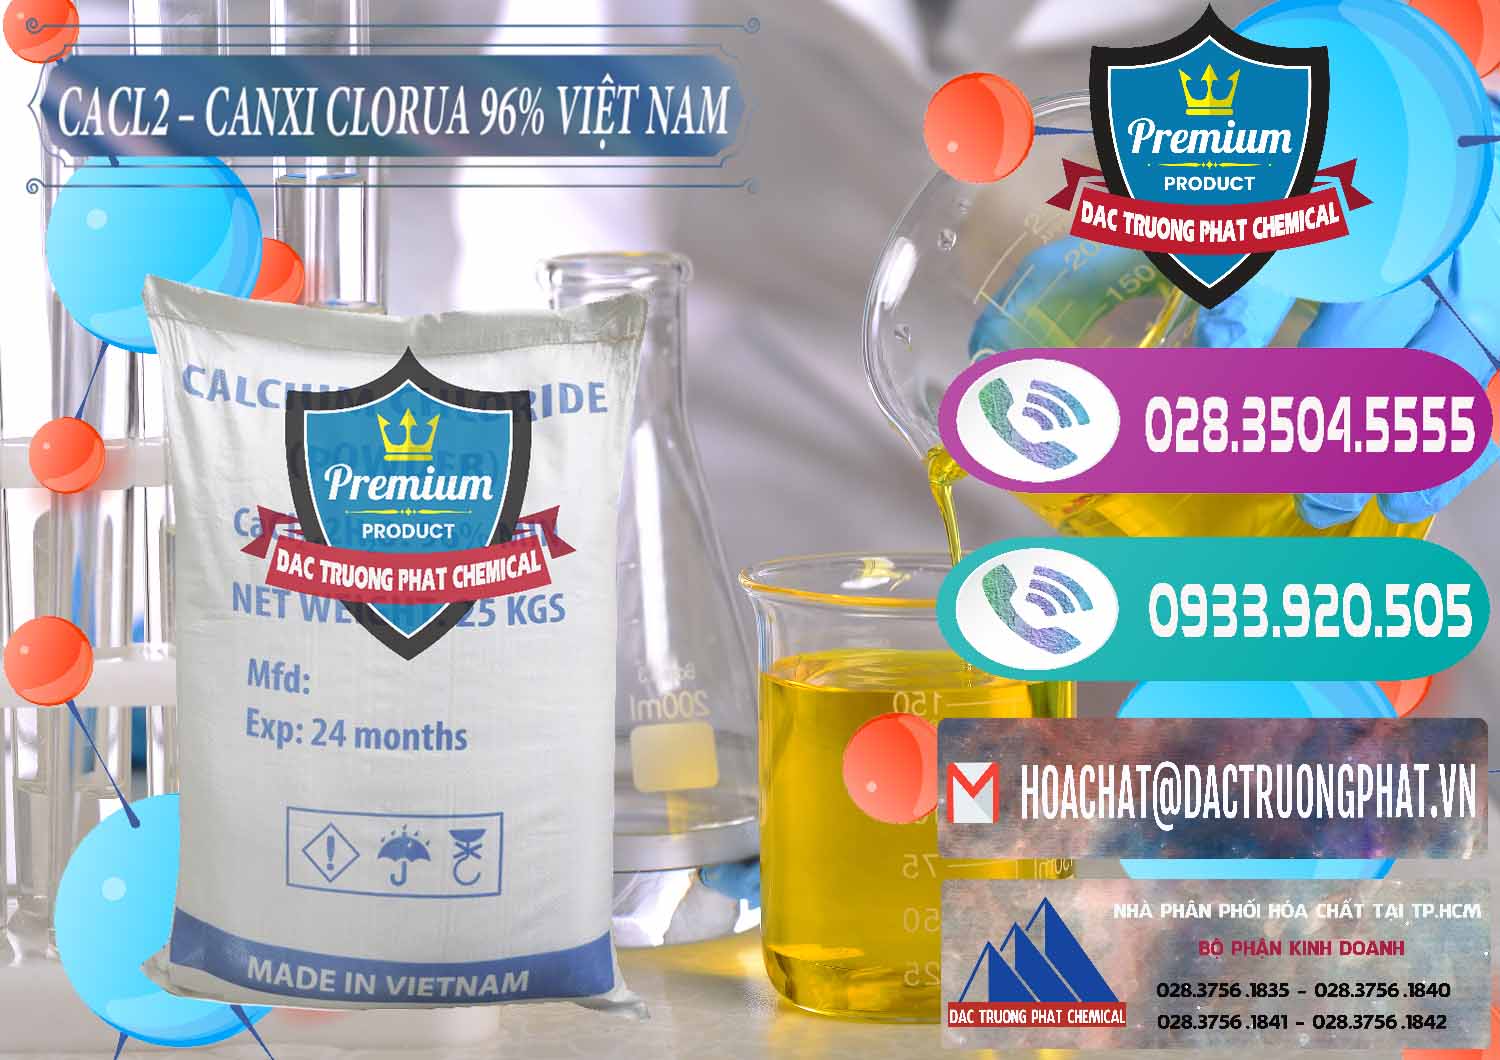 Công ty chuyên phân phối & cung ứng CaCl2 – Canxi Clorua 96% Việt Nam - 0236 - Công ty phân phối & cung ứng hóa chất tại TP.HCM - hoachatxulynuoc.com